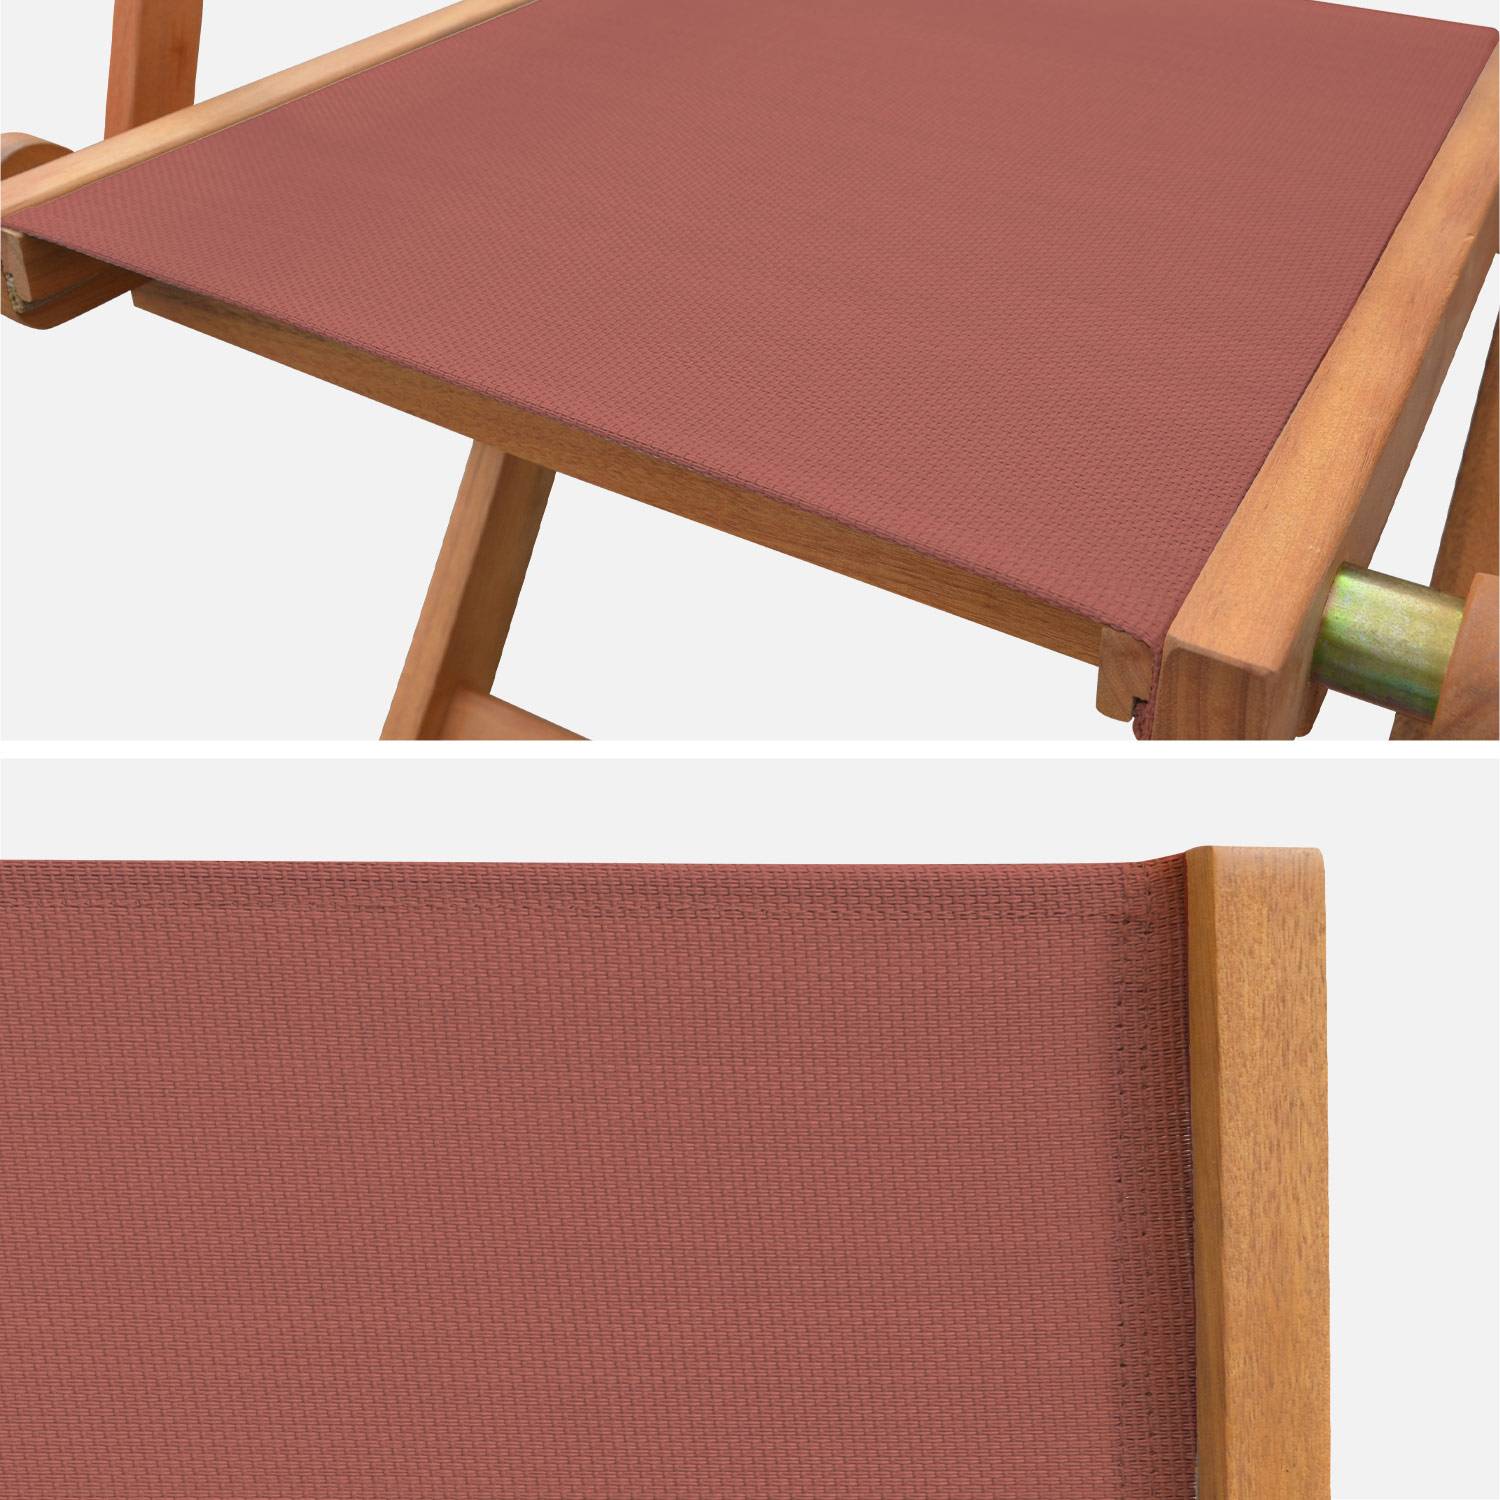 Gartenstühle aus Holz und Textilene - Almeria terrakotta - 2 Klappstühle aus geöltem FSC Eukalyptusholz und Textilene Photo5